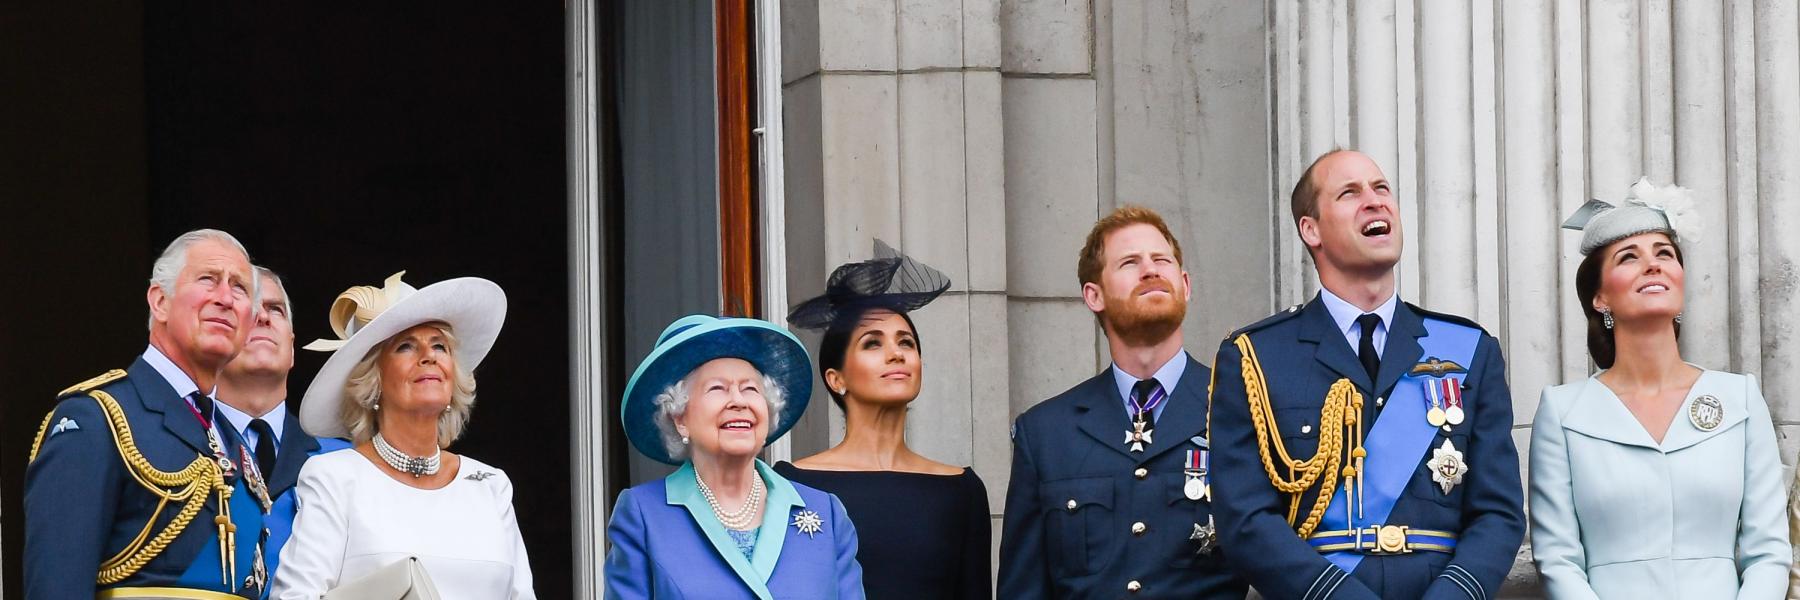 هل ستدعو الملكة إليزابيث "هاري وميغان" لحضور احتفالات اليوبيل البلاتيني؟